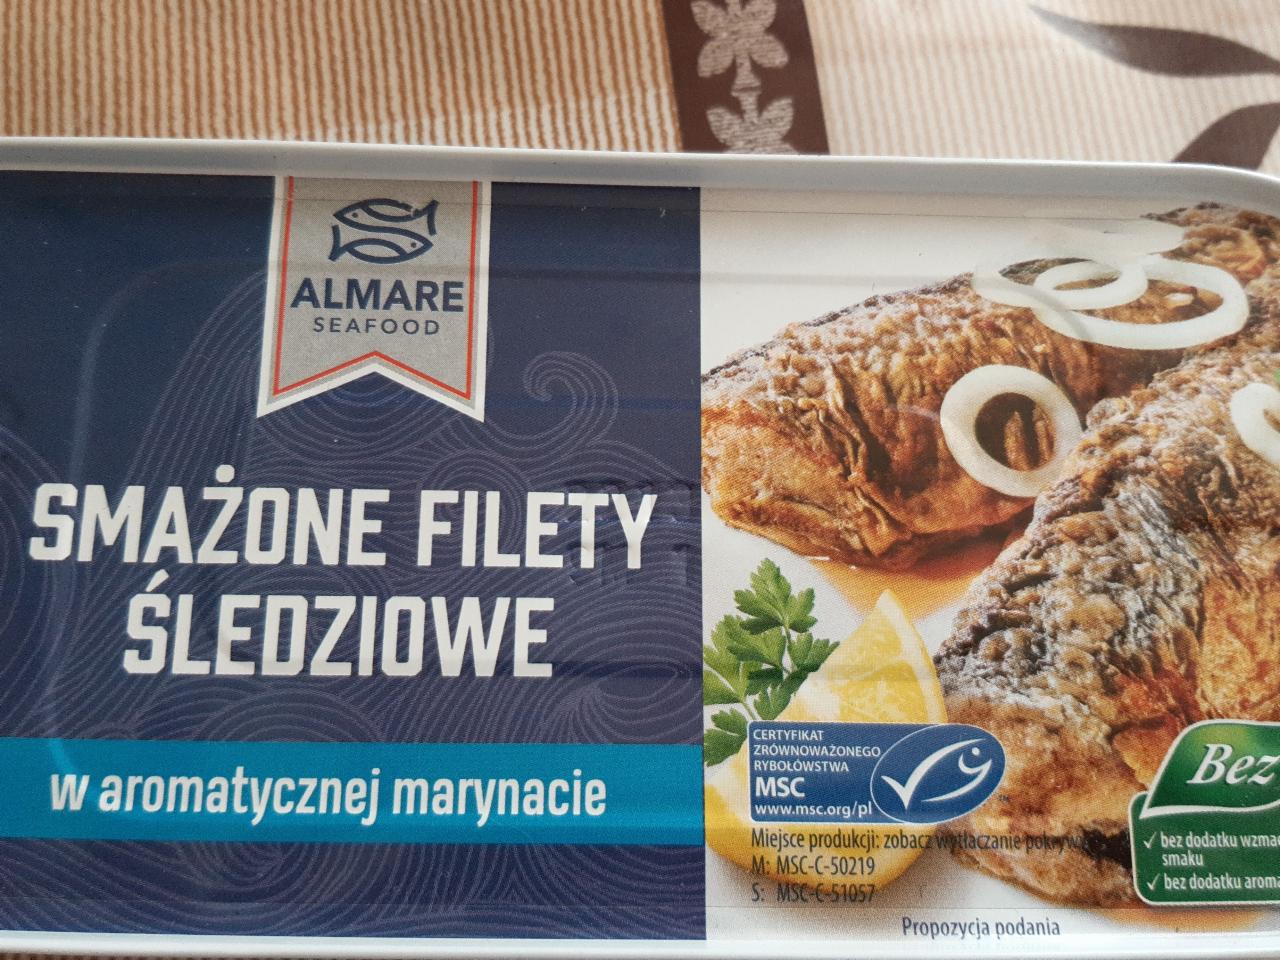 Фото - жареная рыба в консерве Almare Seafood